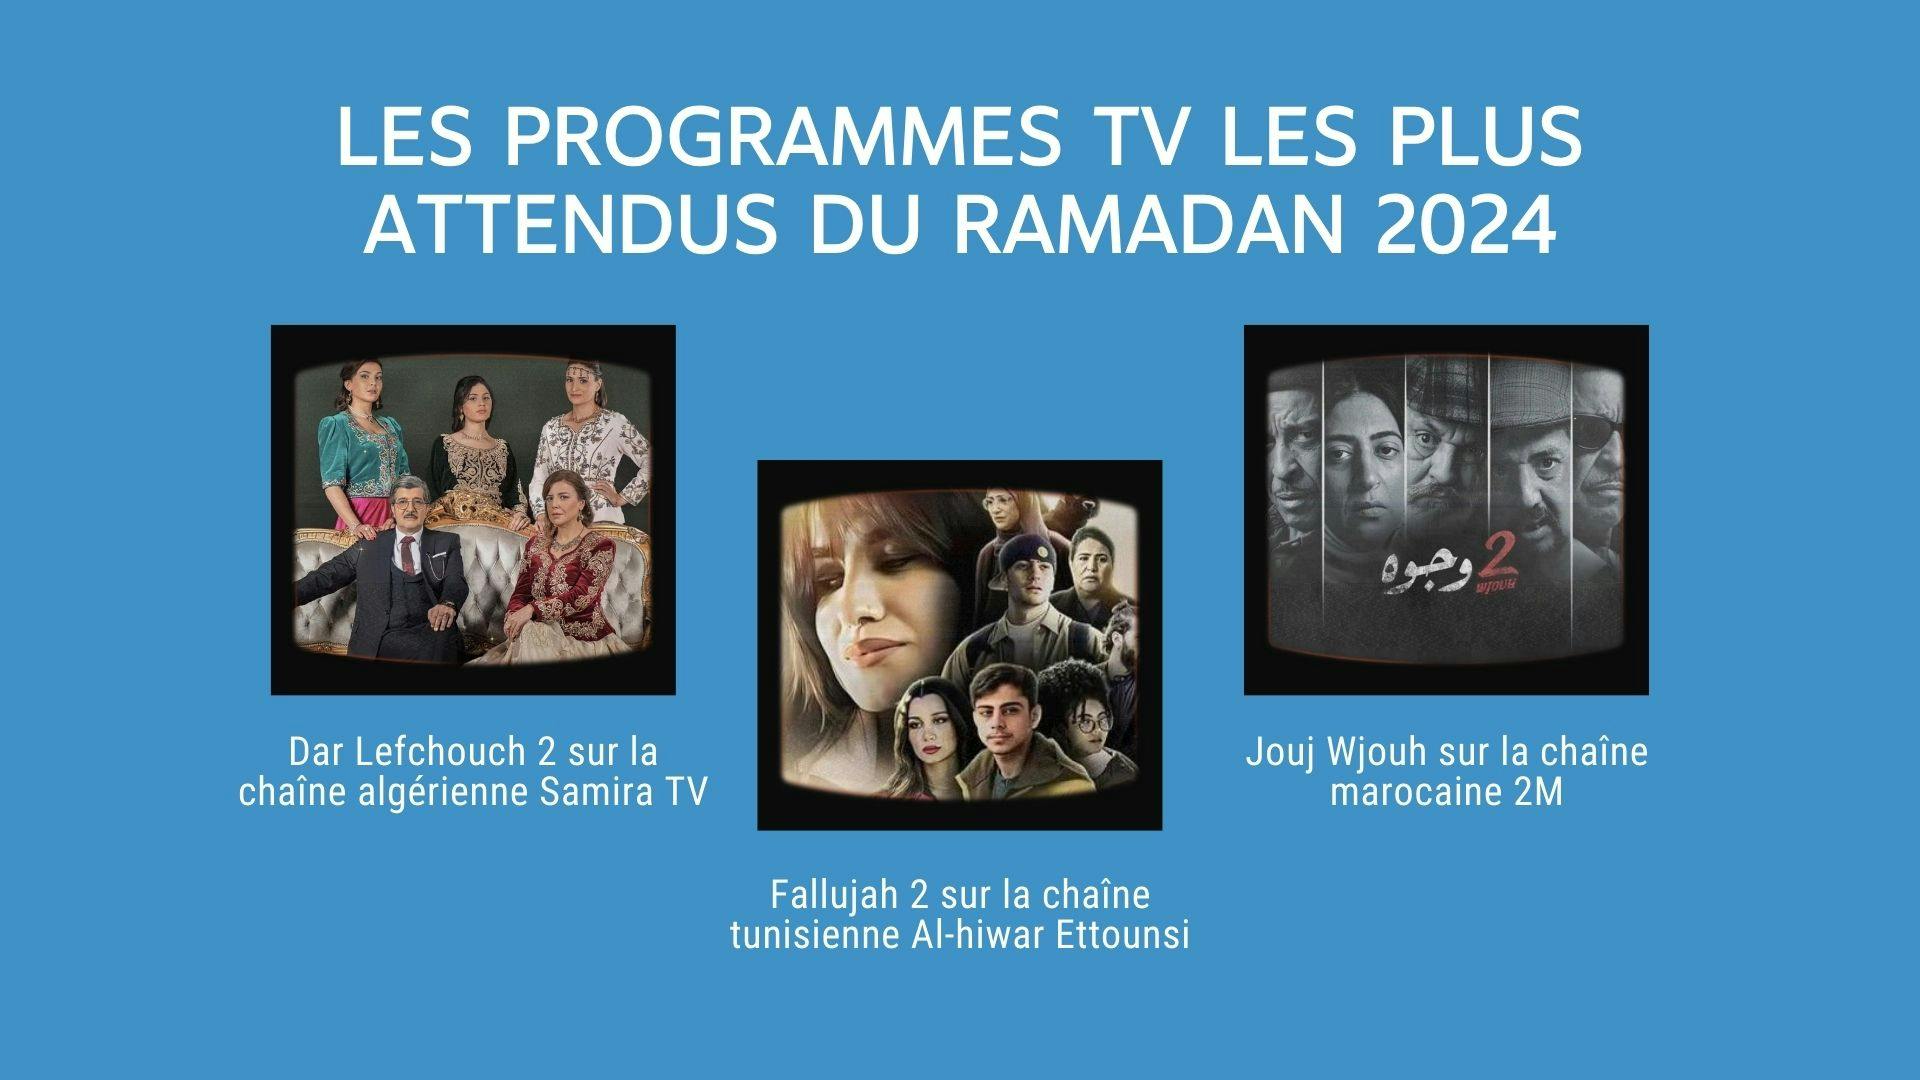 illustration montrant 3 programmes des plus attendus pendant le ramadan 2024